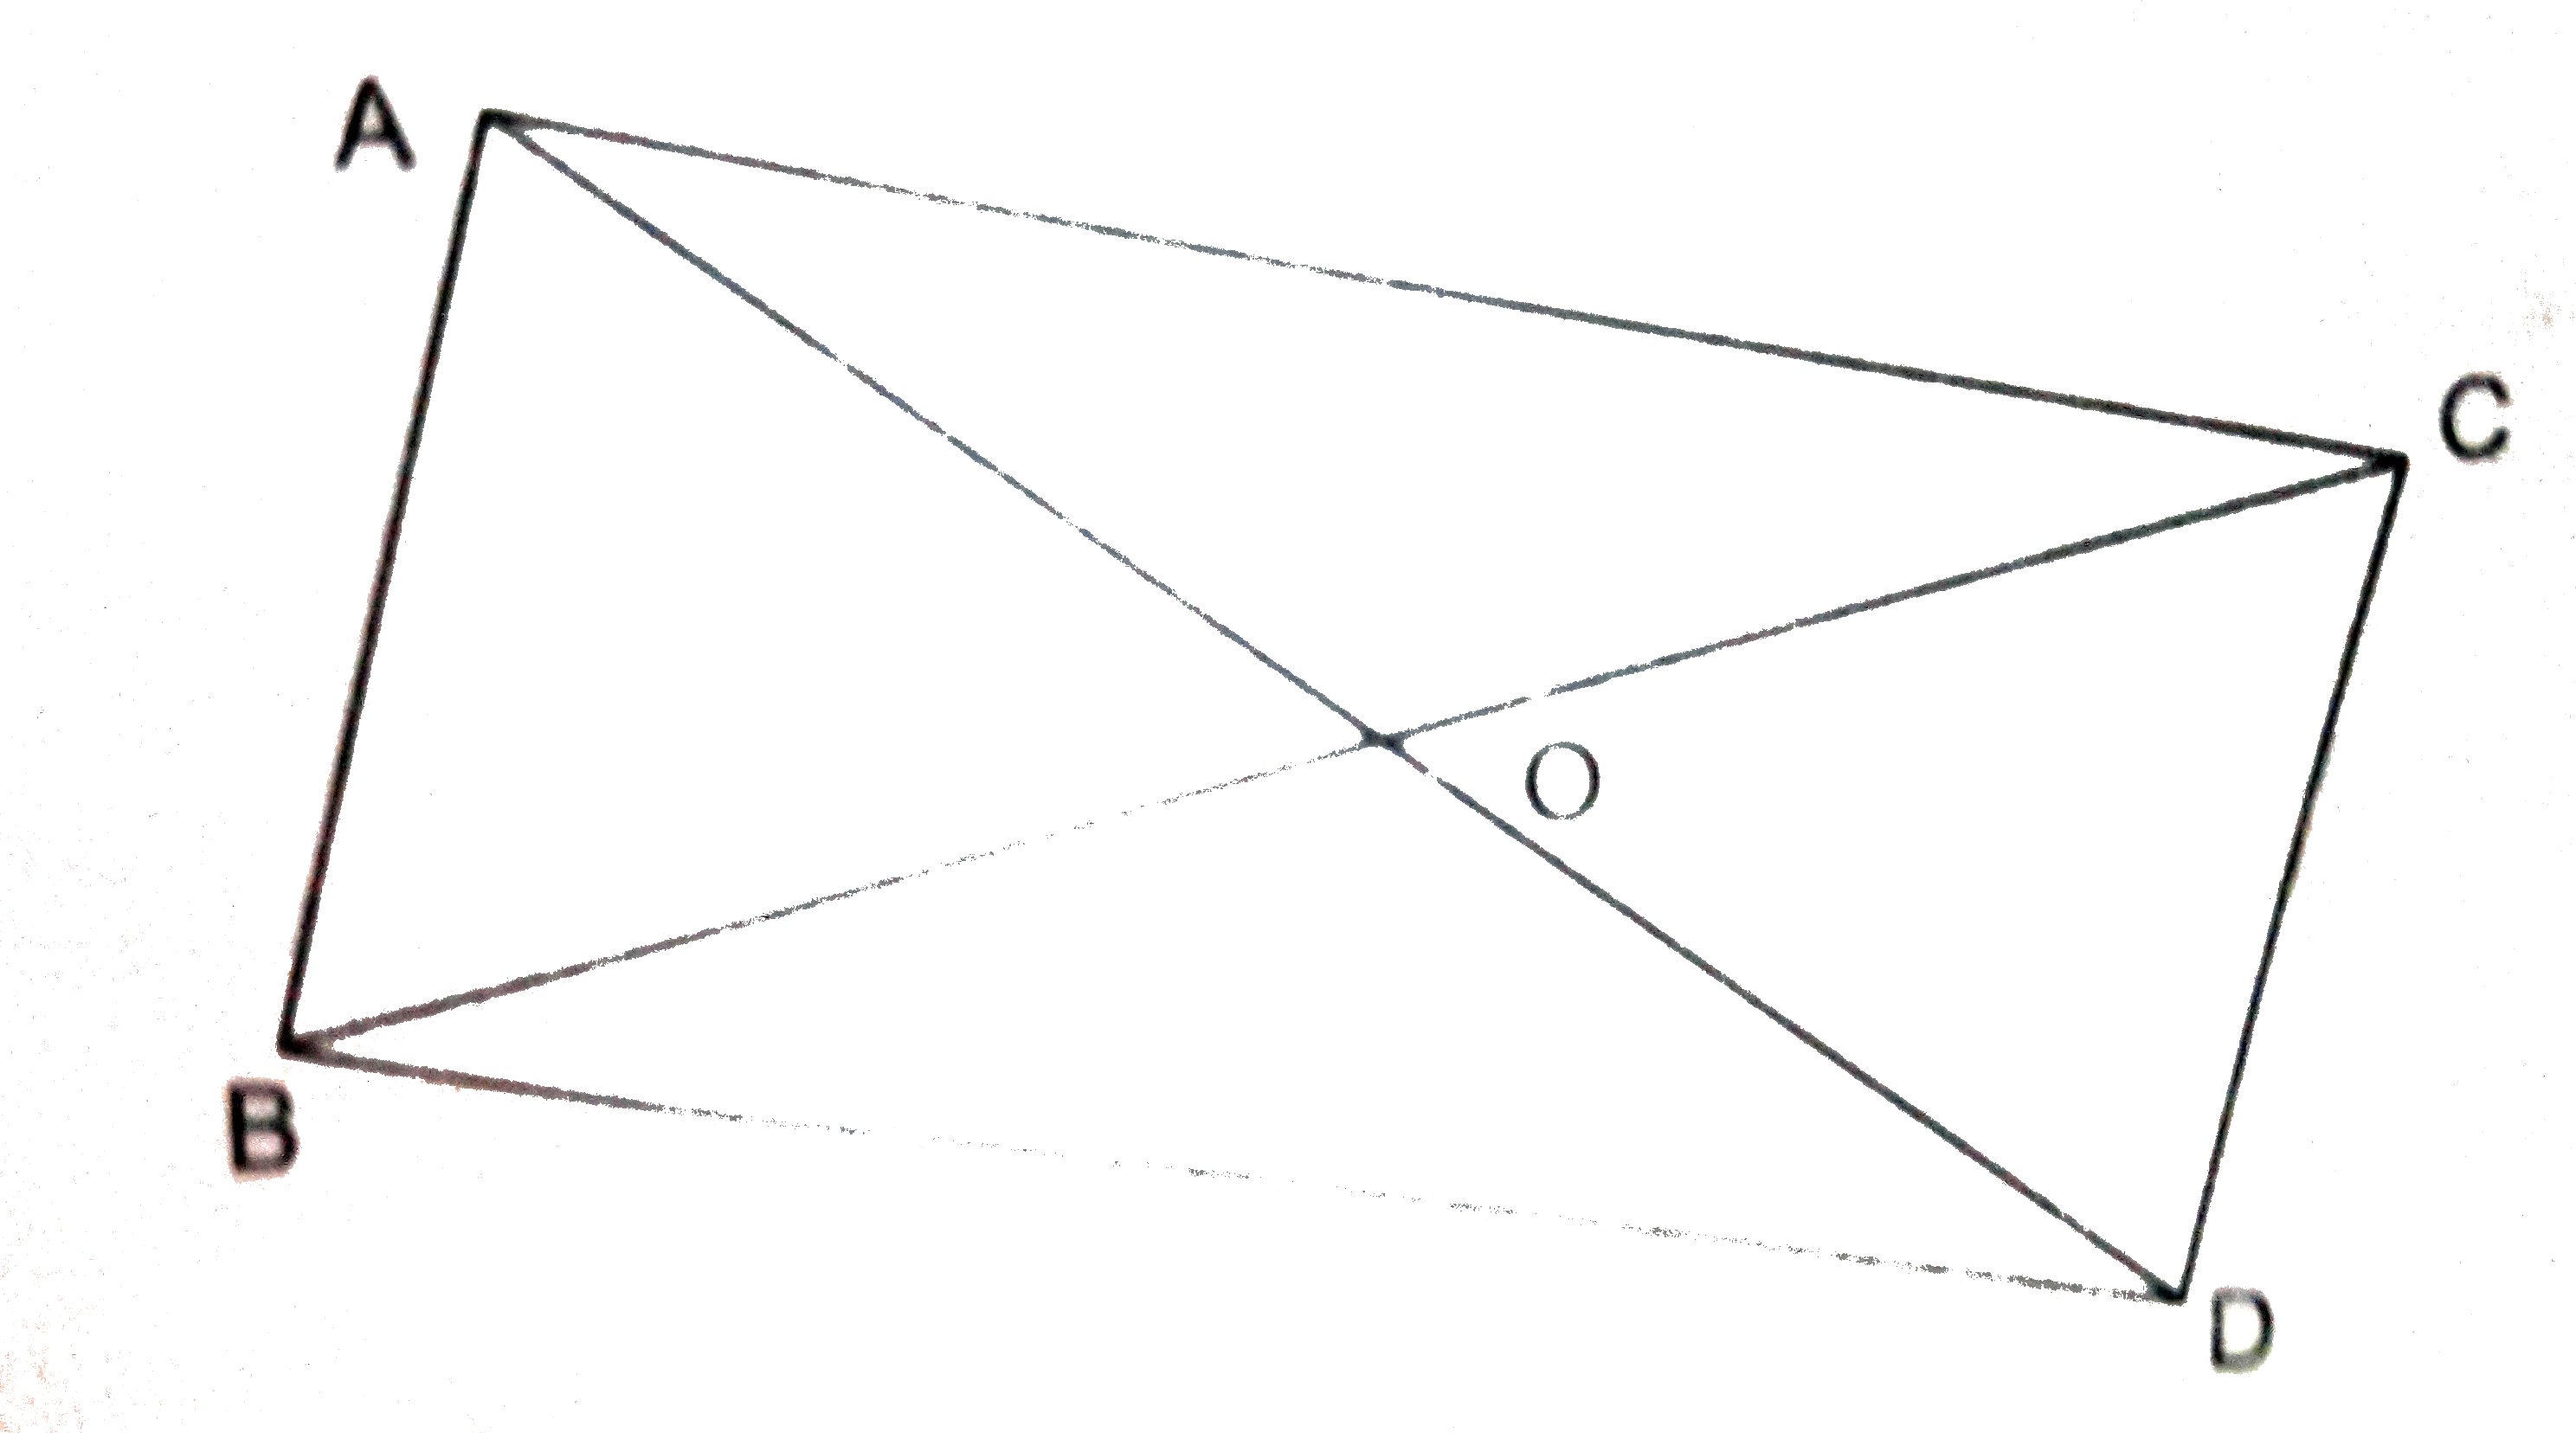 चित्र 8 में, एक ही आधार BC पर तथा विपरीत दिशाओं में दो त्रिभुज triangleABC